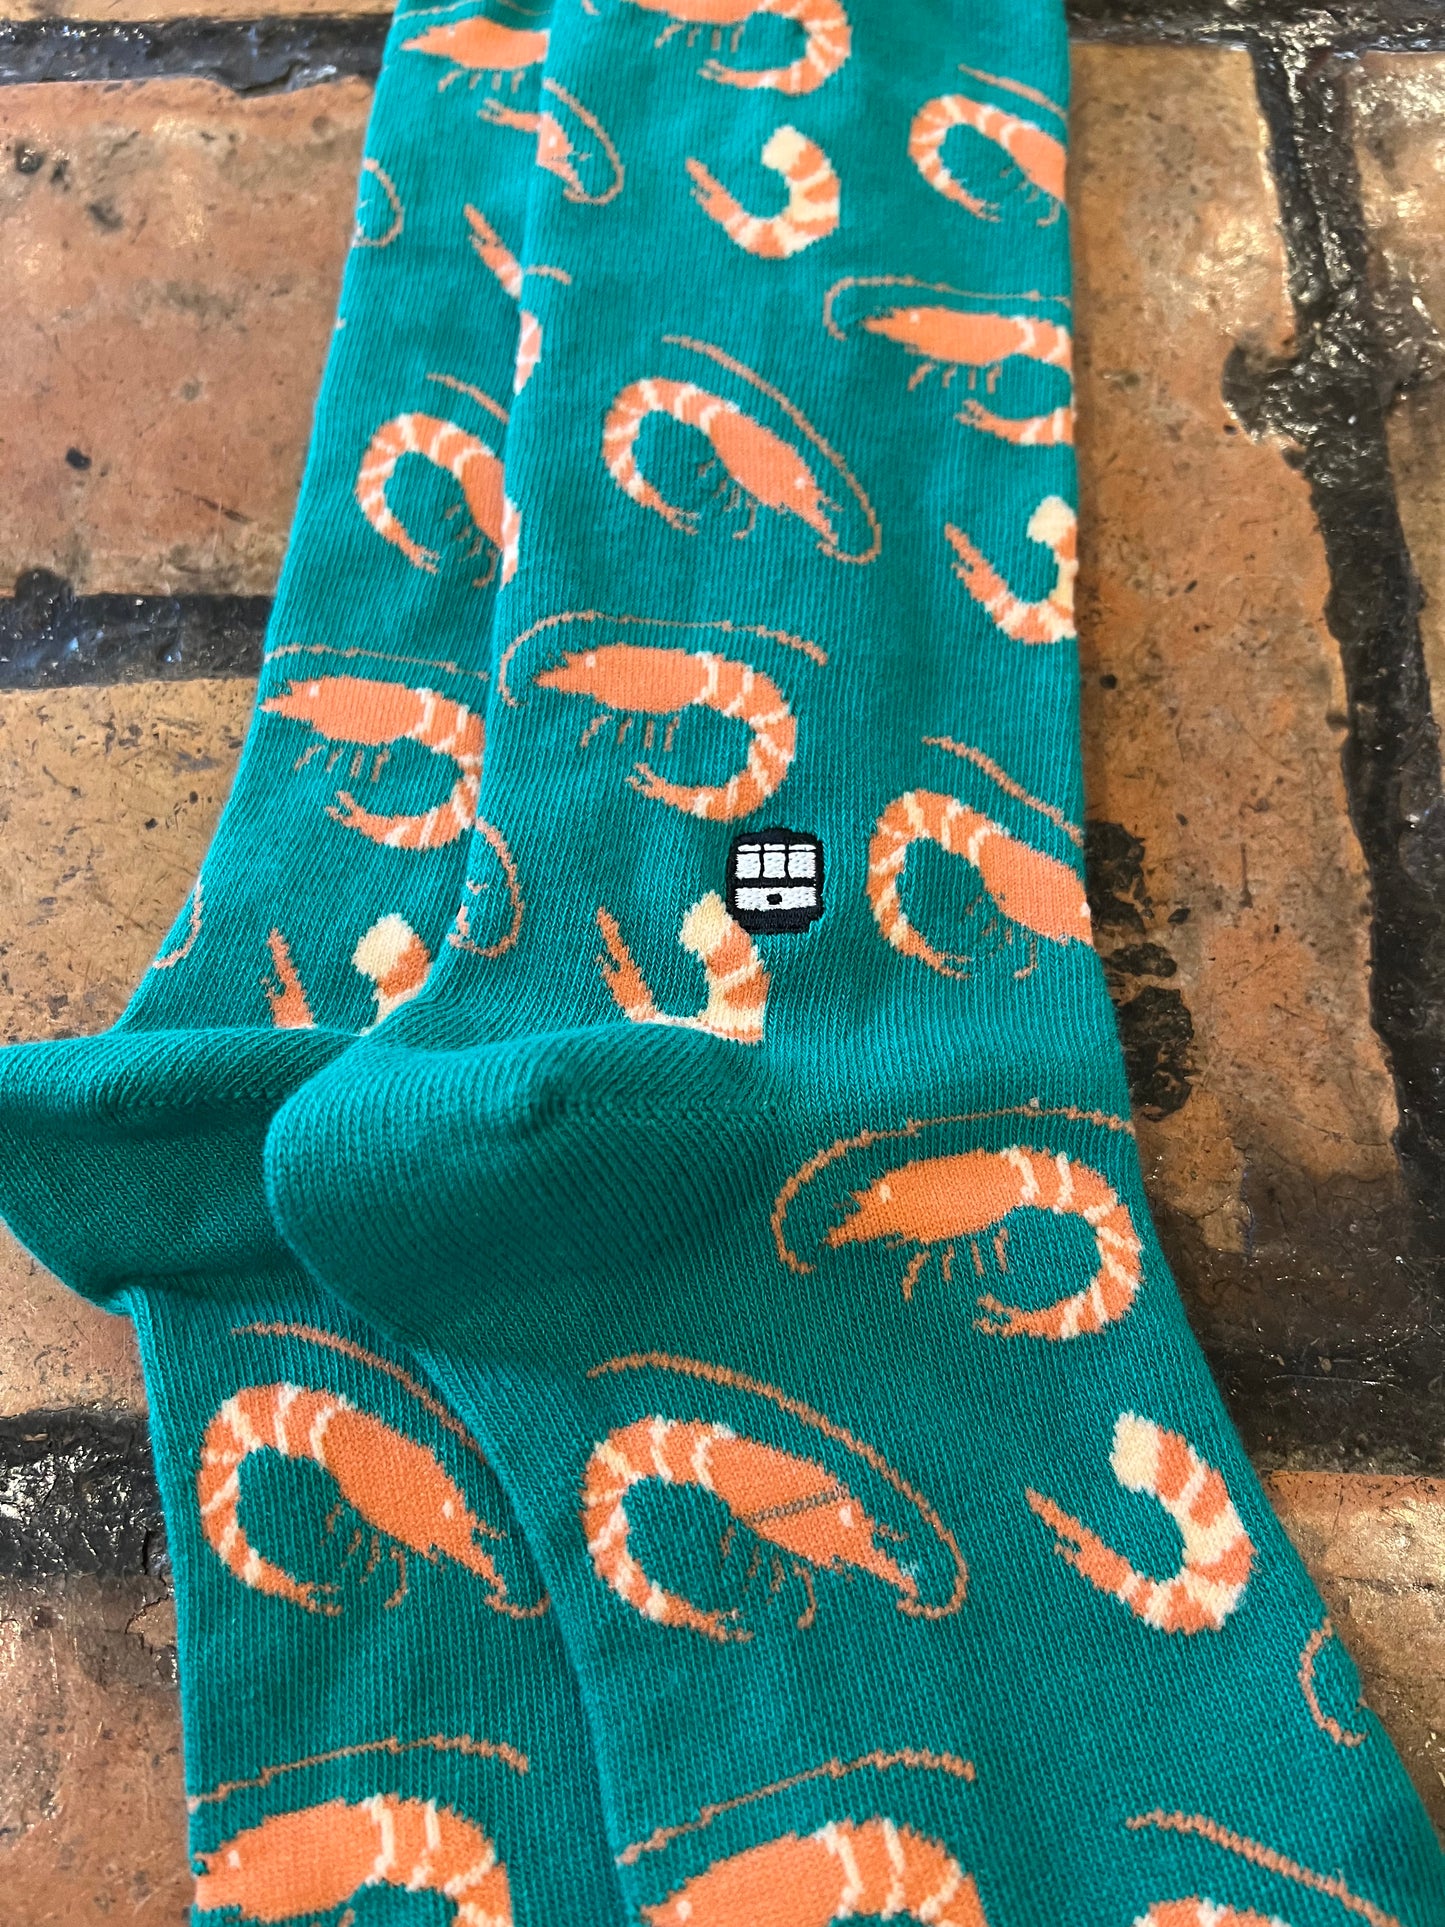 Shrimp Socks Made In New Orleans 